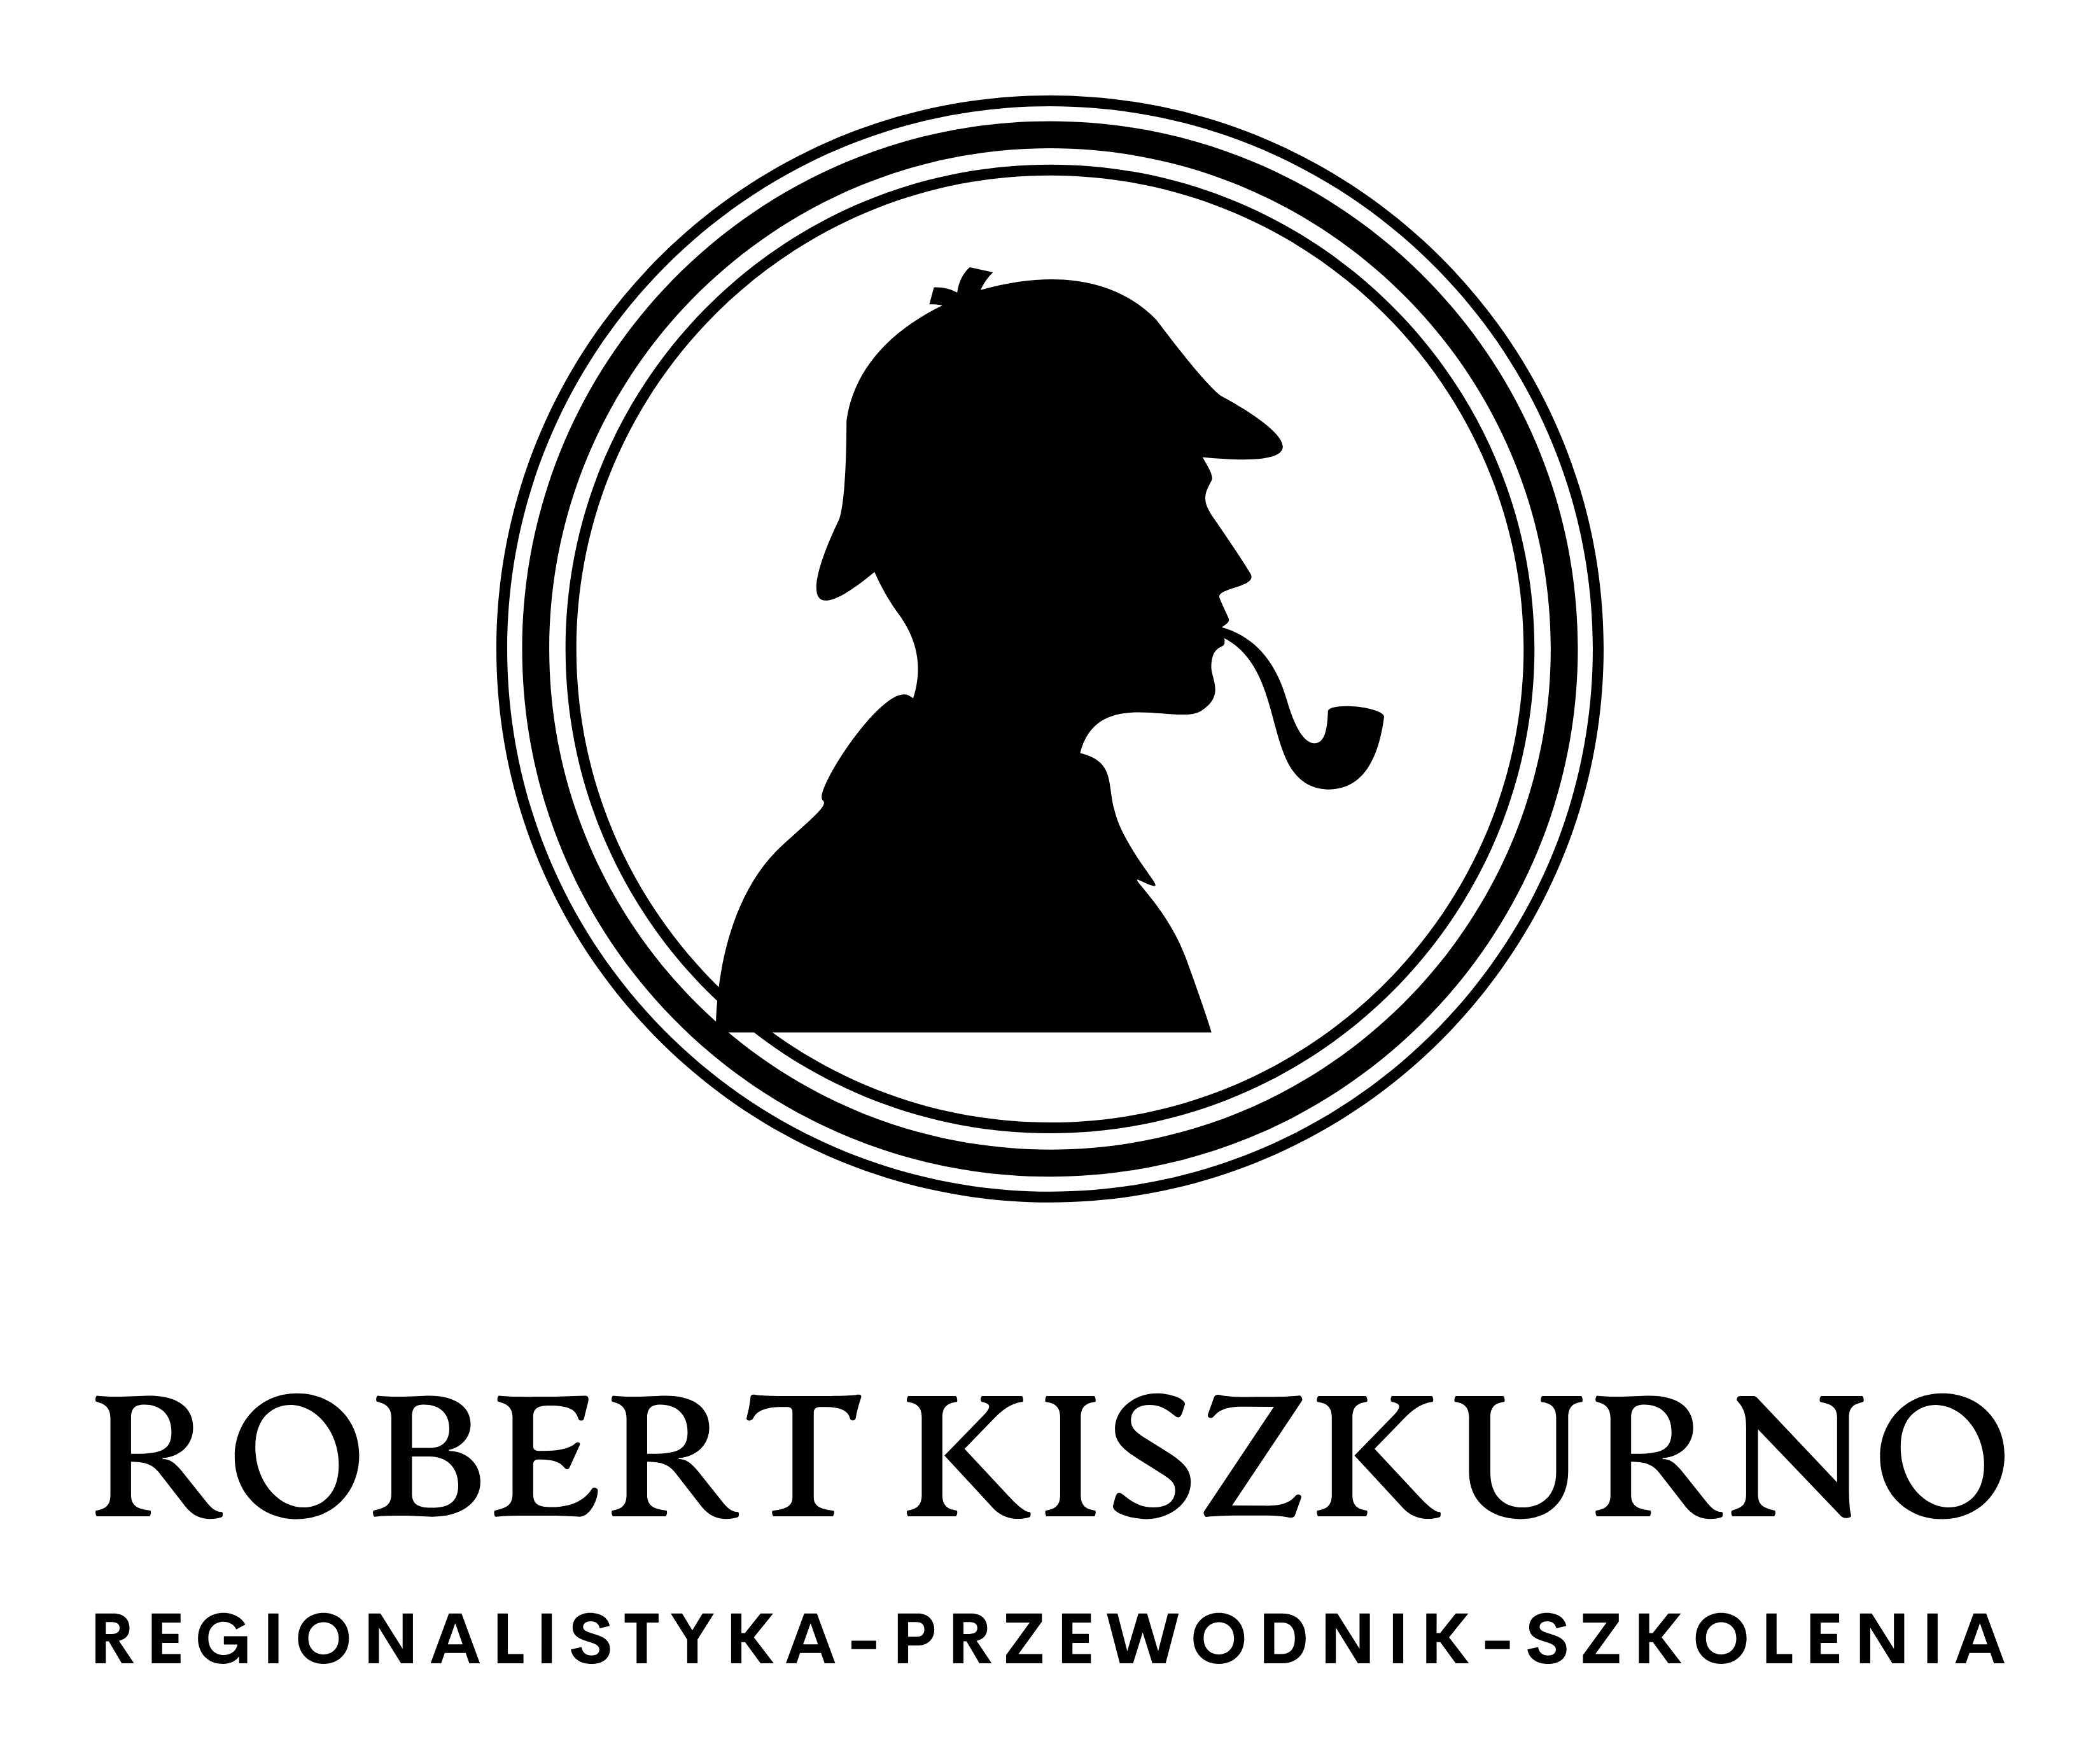 ROBERT KISZKURNO- regionalistyka-przewodnik-szkolenia